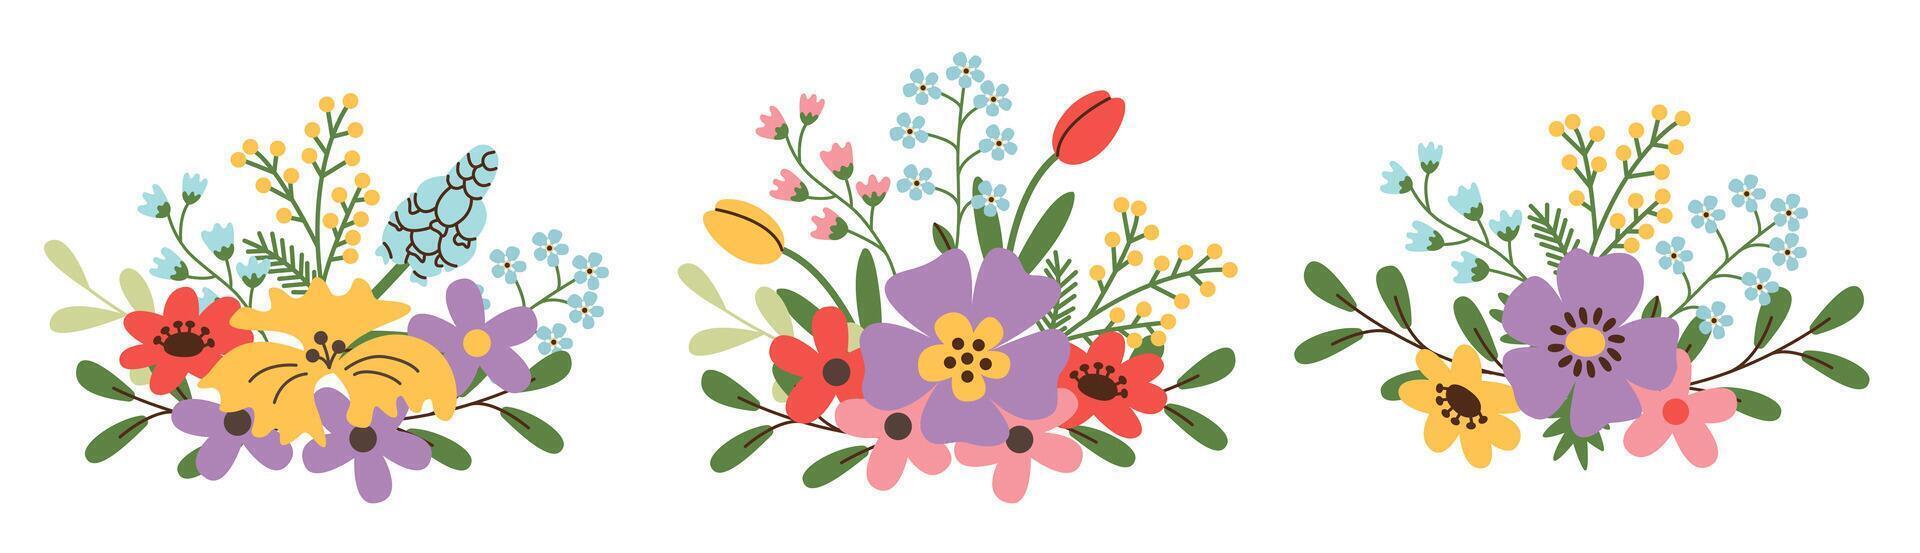 floral ramalhete em branco fundo. floral Primavera poster, convidar. vetor ilustração ou cumprimento cartão ou convite Projeto.